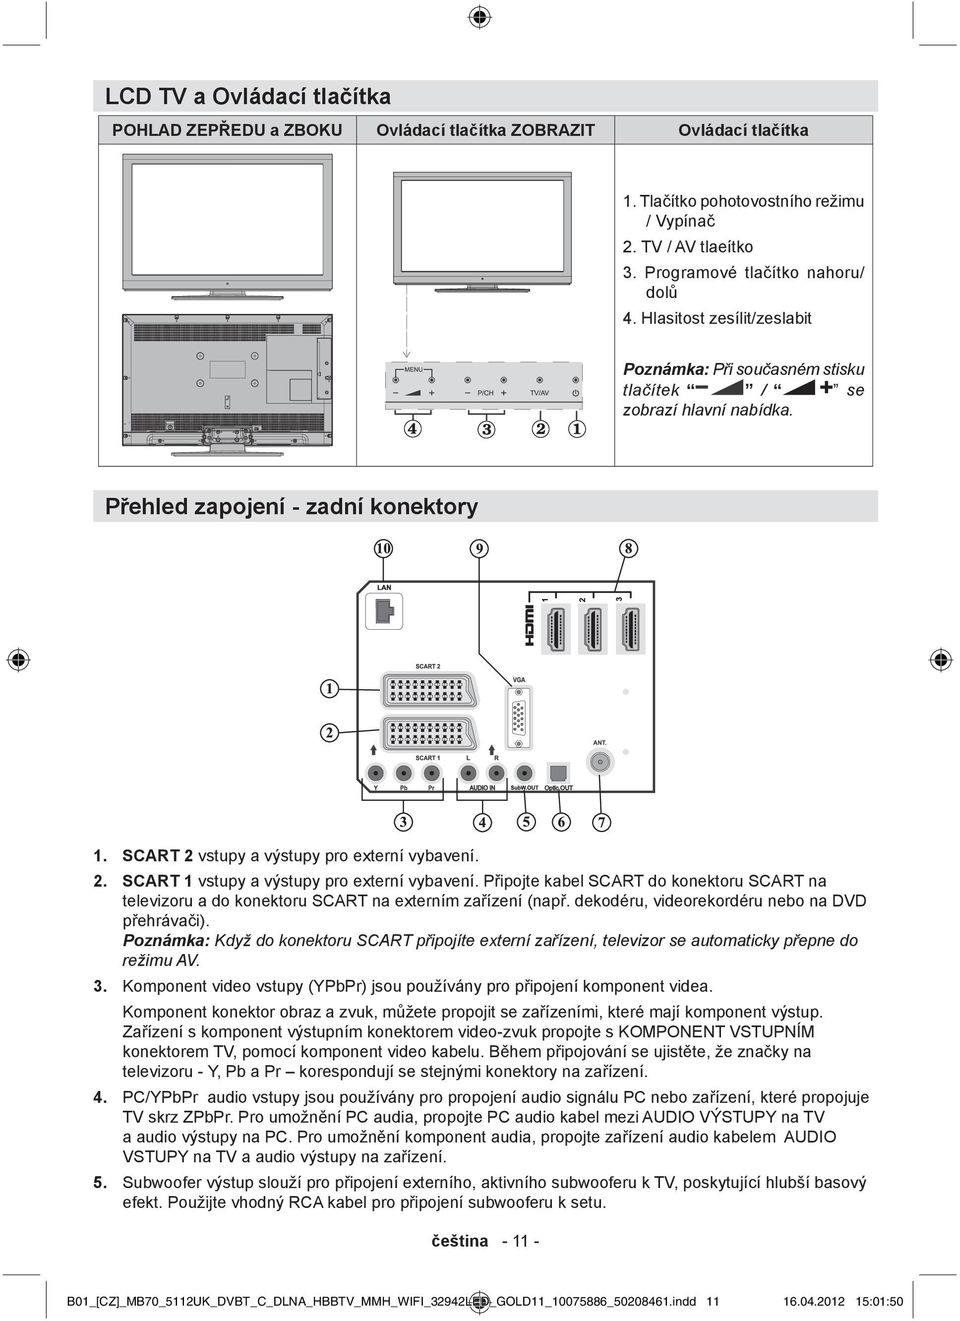 PĜipojte kabel SCART do konektoru SCART na televizoru a do konektoru SCART na externím zaĝízení (napĝ. dekodéru, videorekordéru nebo na DVD pĝehrávaþi).